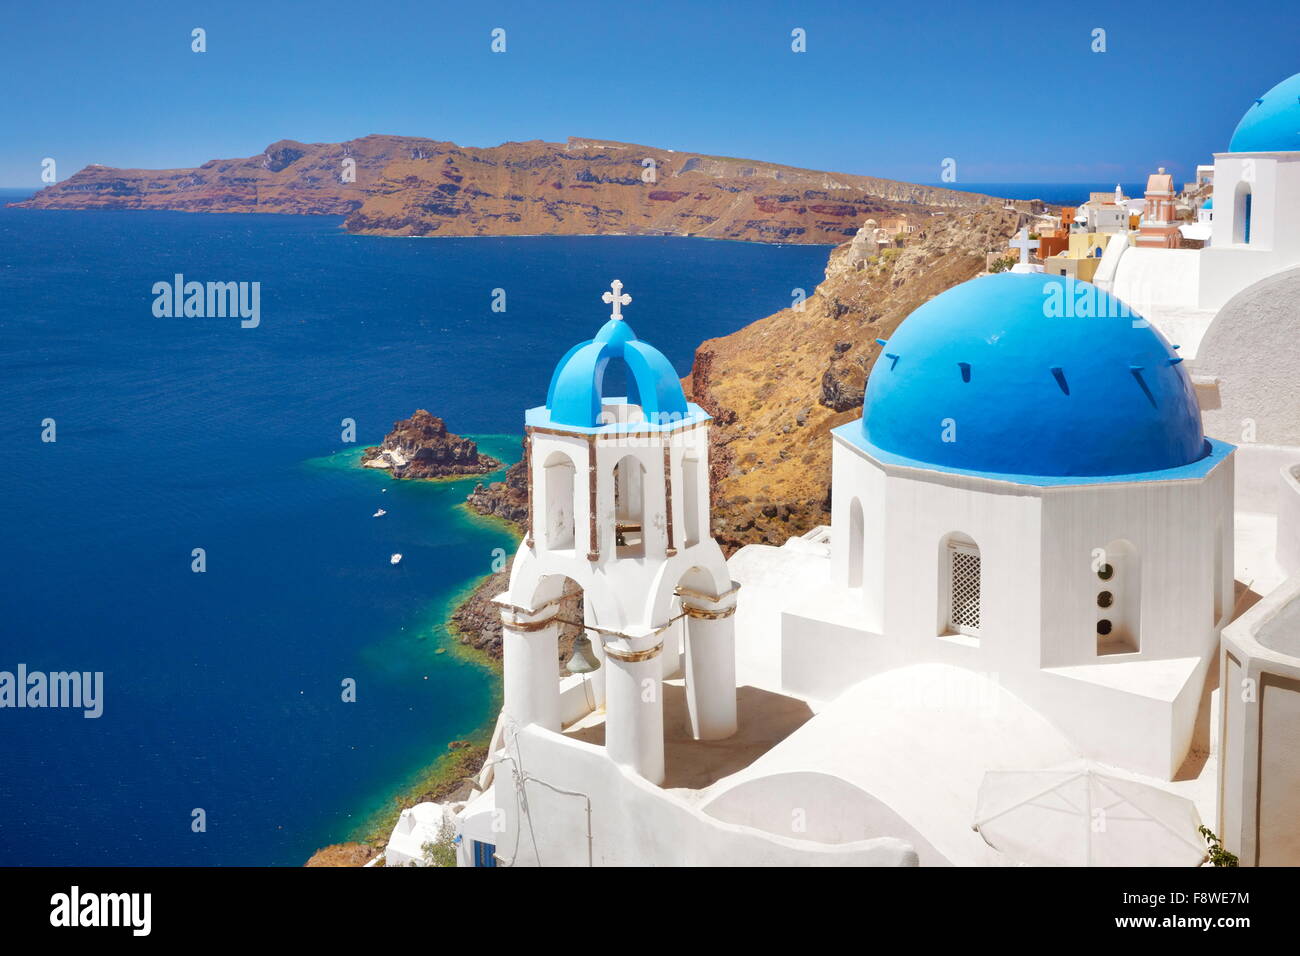 Santorini paesaggio greco con la torre campanaria e la chiesa bianca con cupola blu che si affaccia sul mare, Oia - Santorini Island, Grecia Foto Stock